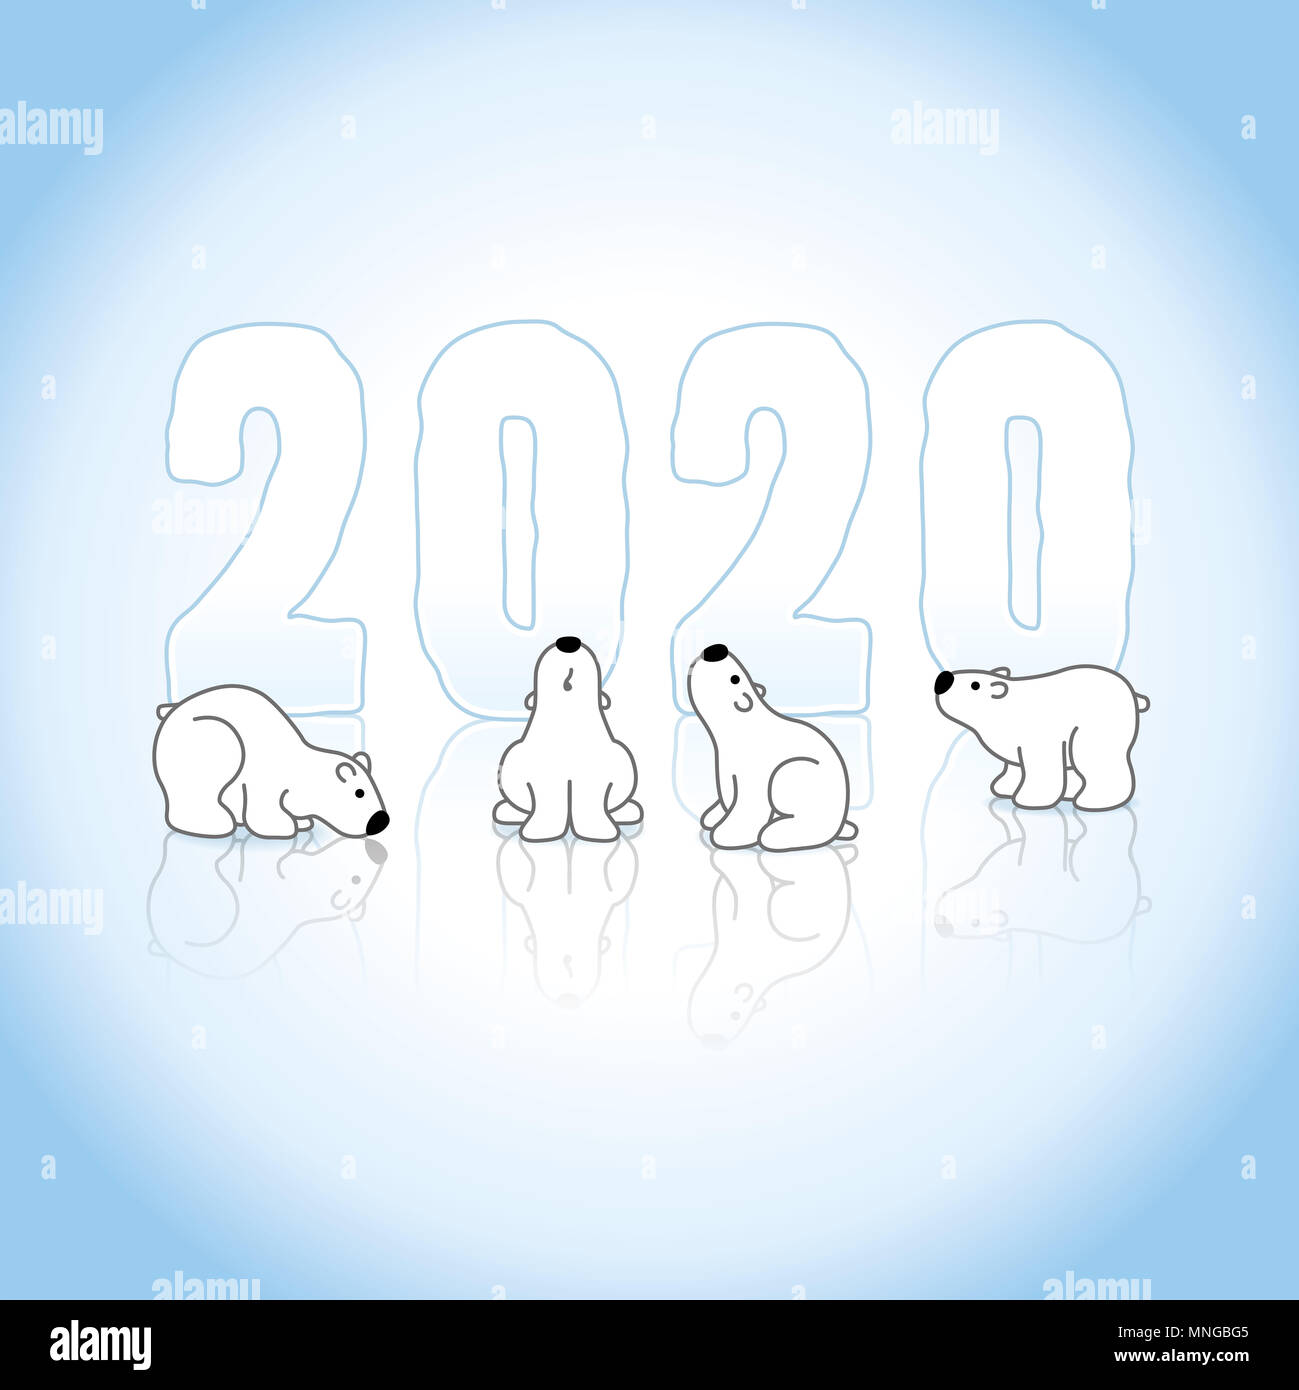 Cuatro osos polares en frente del nuevo año 2020 congelado en un azul hielo  frío con reflexiones de fondo Fotografía de stock - Alamy